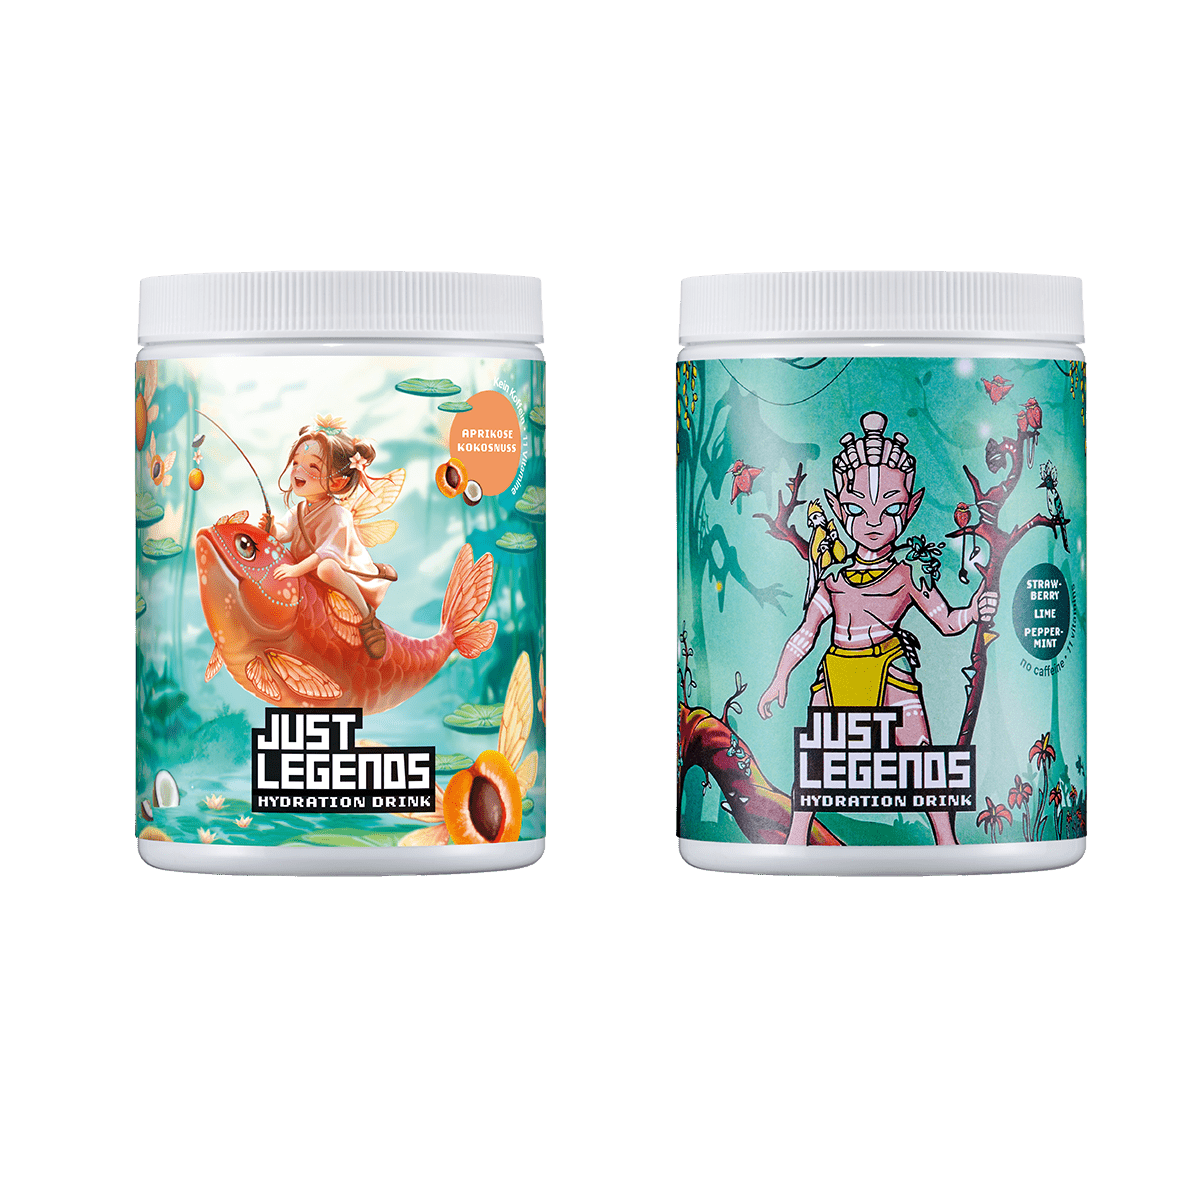 Just Legends Hydration Double Pack | Funktionaler, veganer Multipack auf Pulverbasis ohne Zucker, mit wenig Kalorien, vielen Vitaminen und natürlichen Aromen.